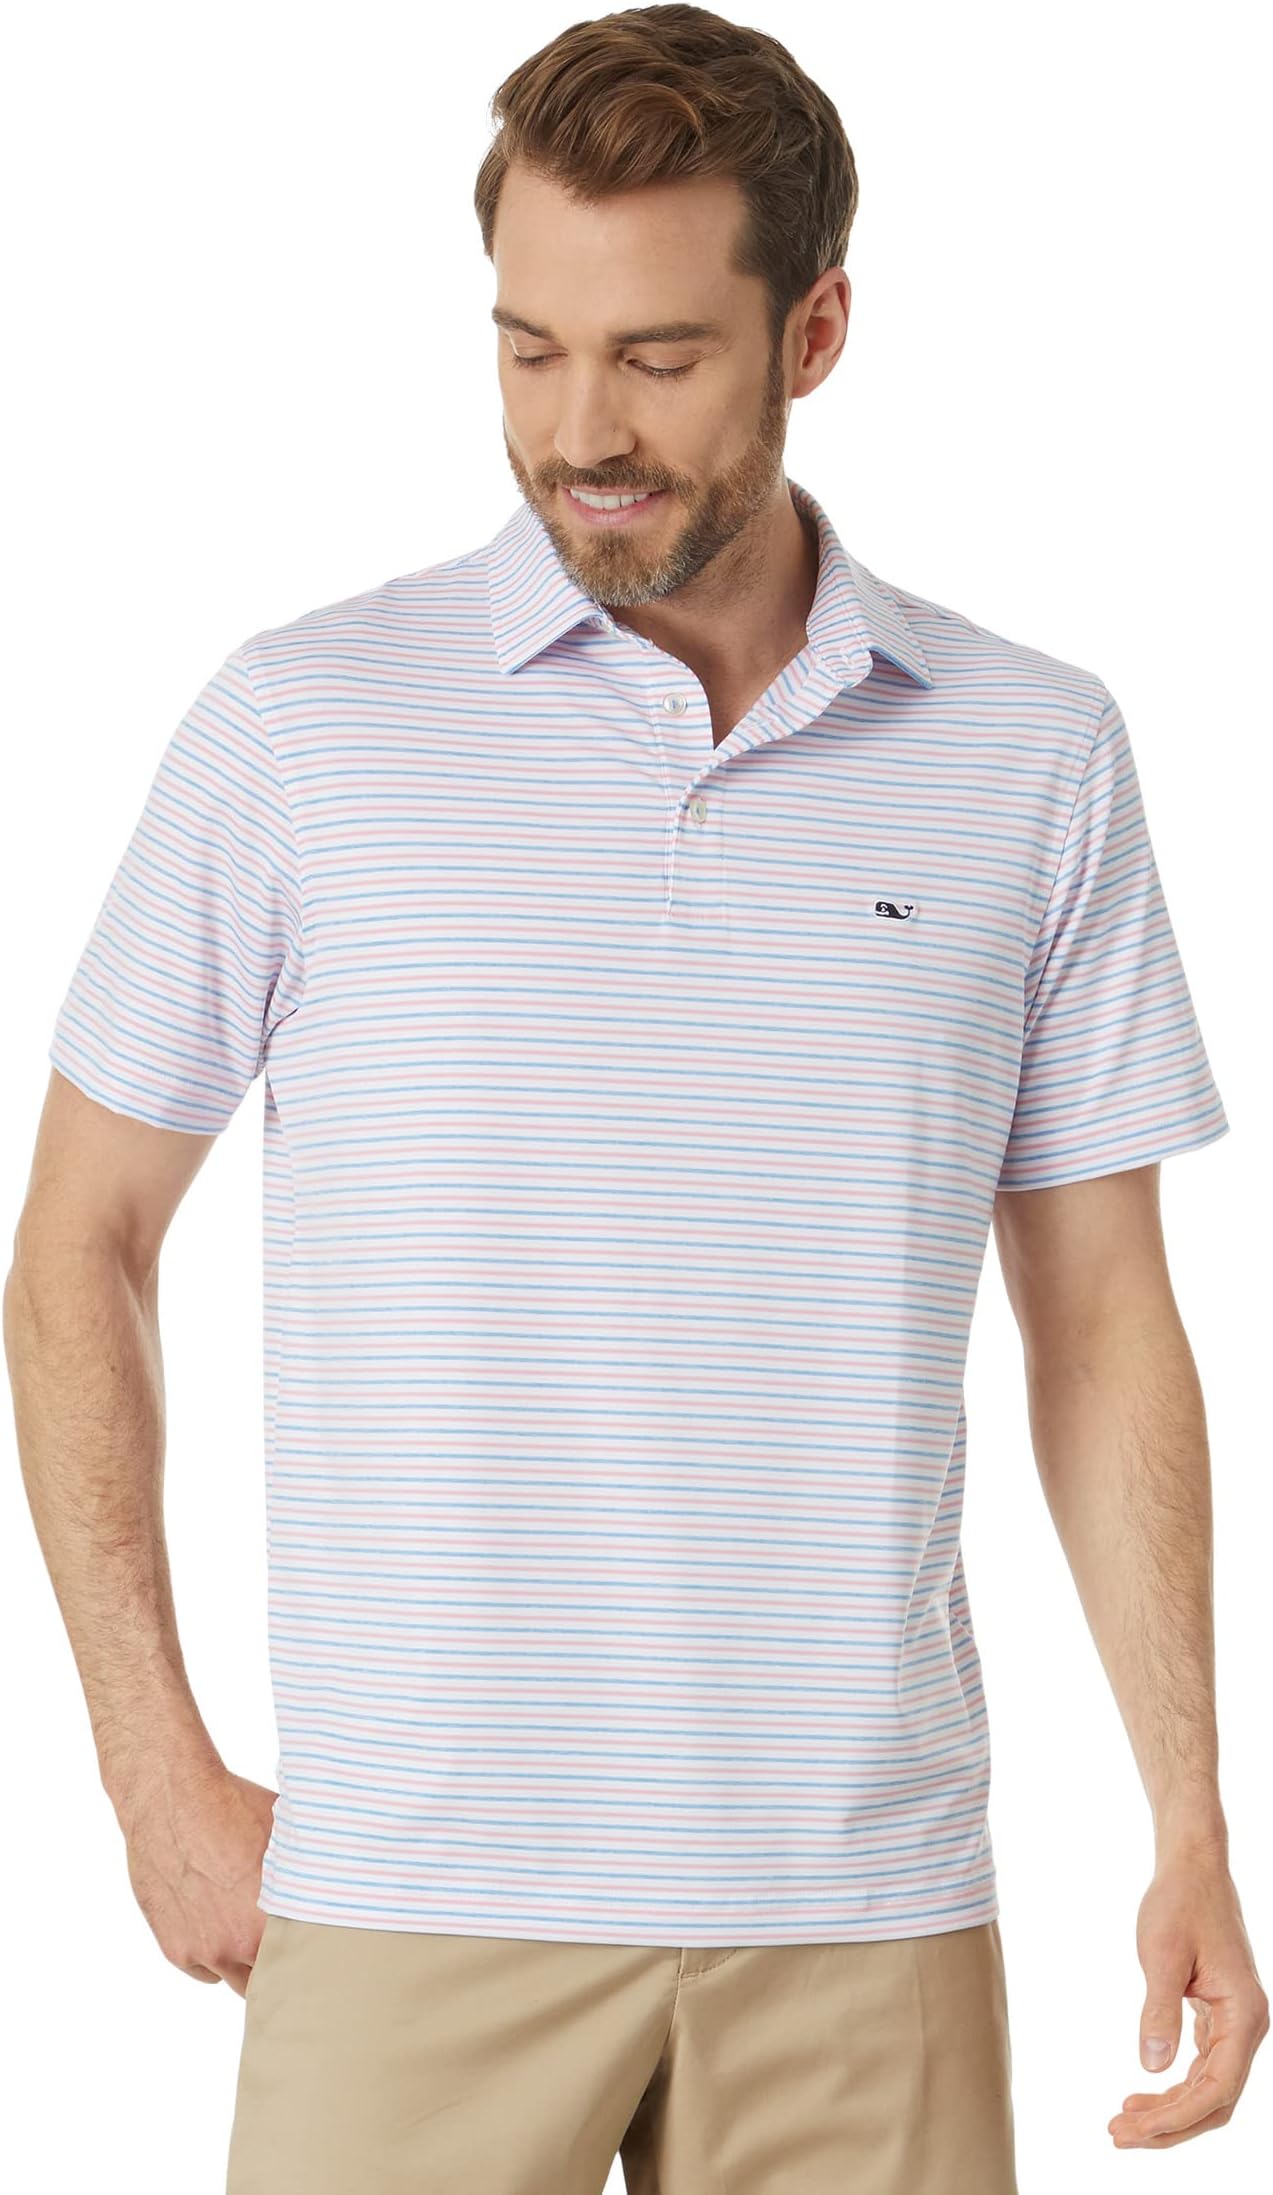 Рубашка-поло Tri Bradley Stripe Sankaty Vineyard Vines, цвет Stripe White Cap/Hibiscus/Ocean Breeze Tejeda